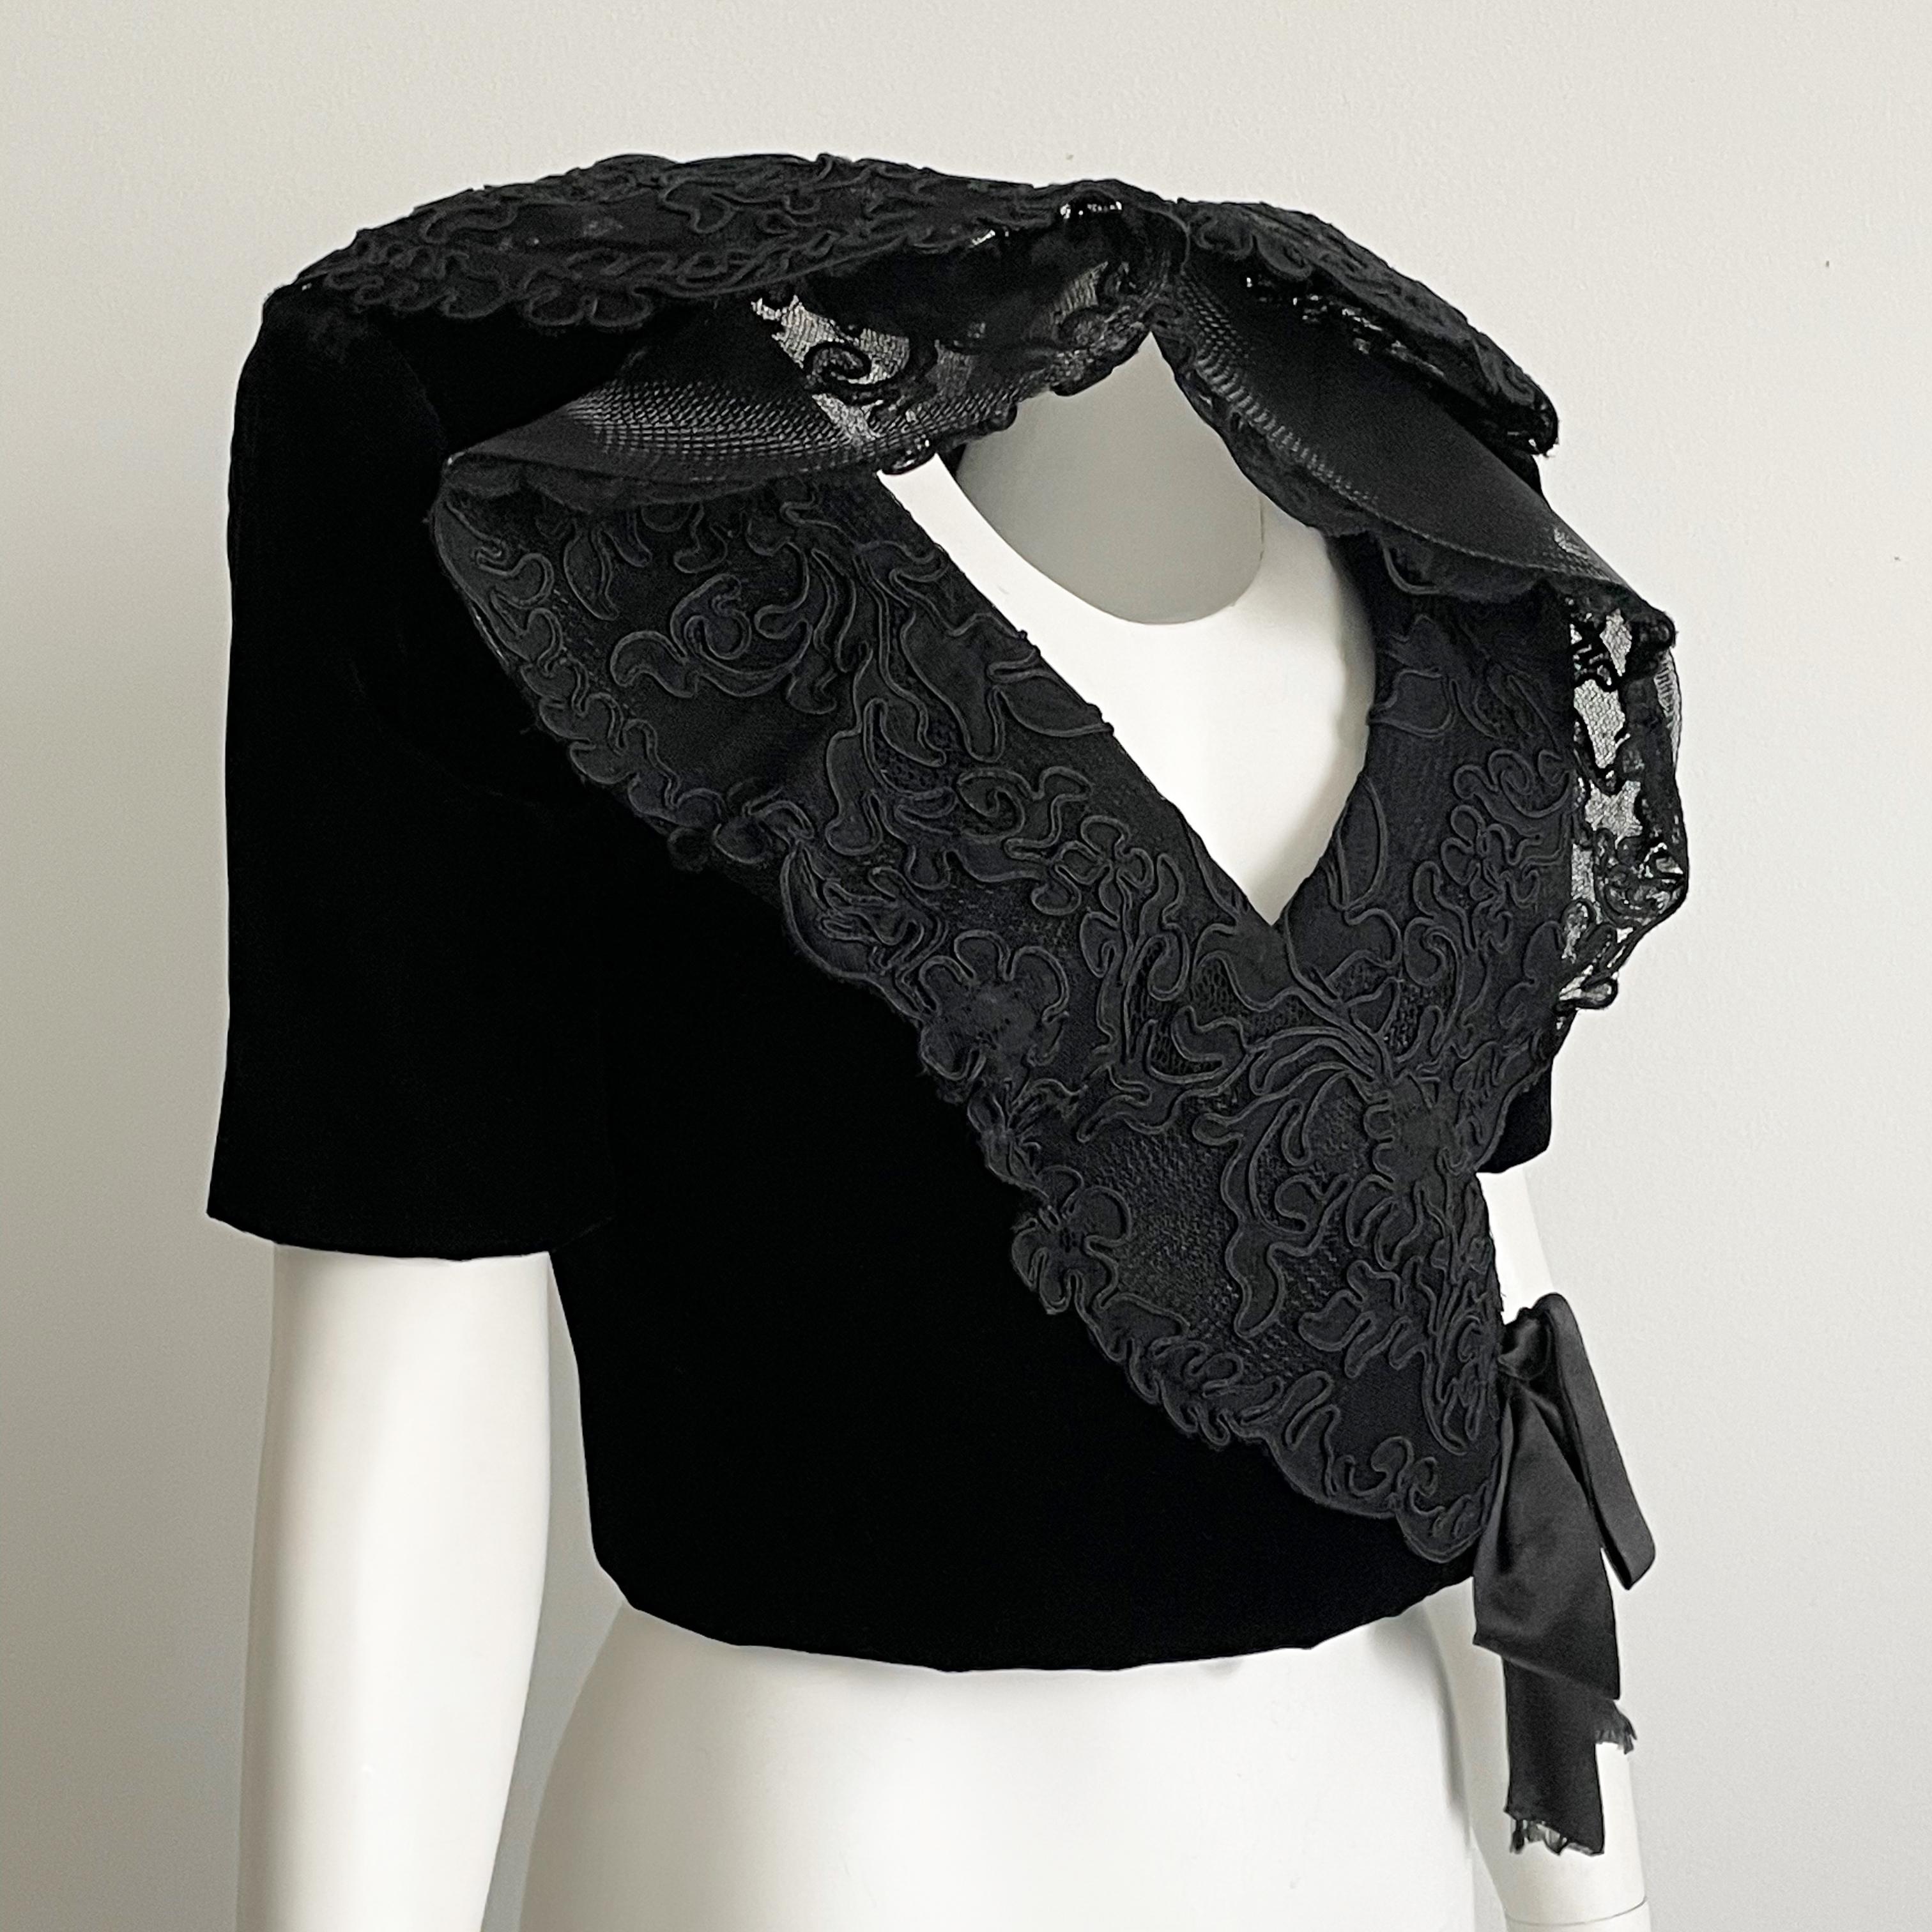 Jacqueline de Ribes Jacket Bolero Cropped Formal Couture Black Lace Velvet  For Sale 1